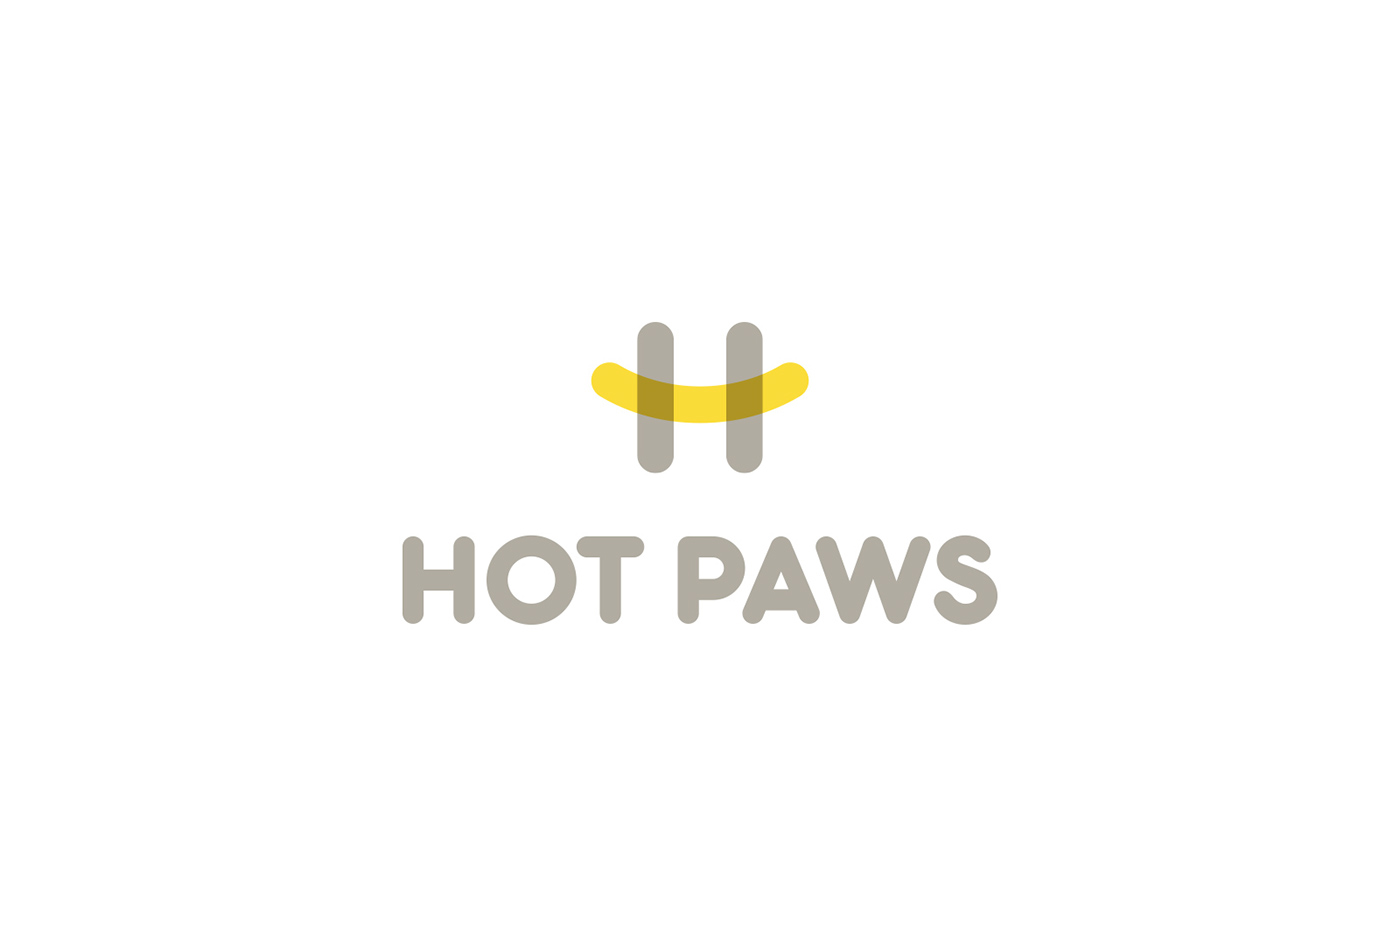 加拿大户外品牌Hot Paws视觉形象设计